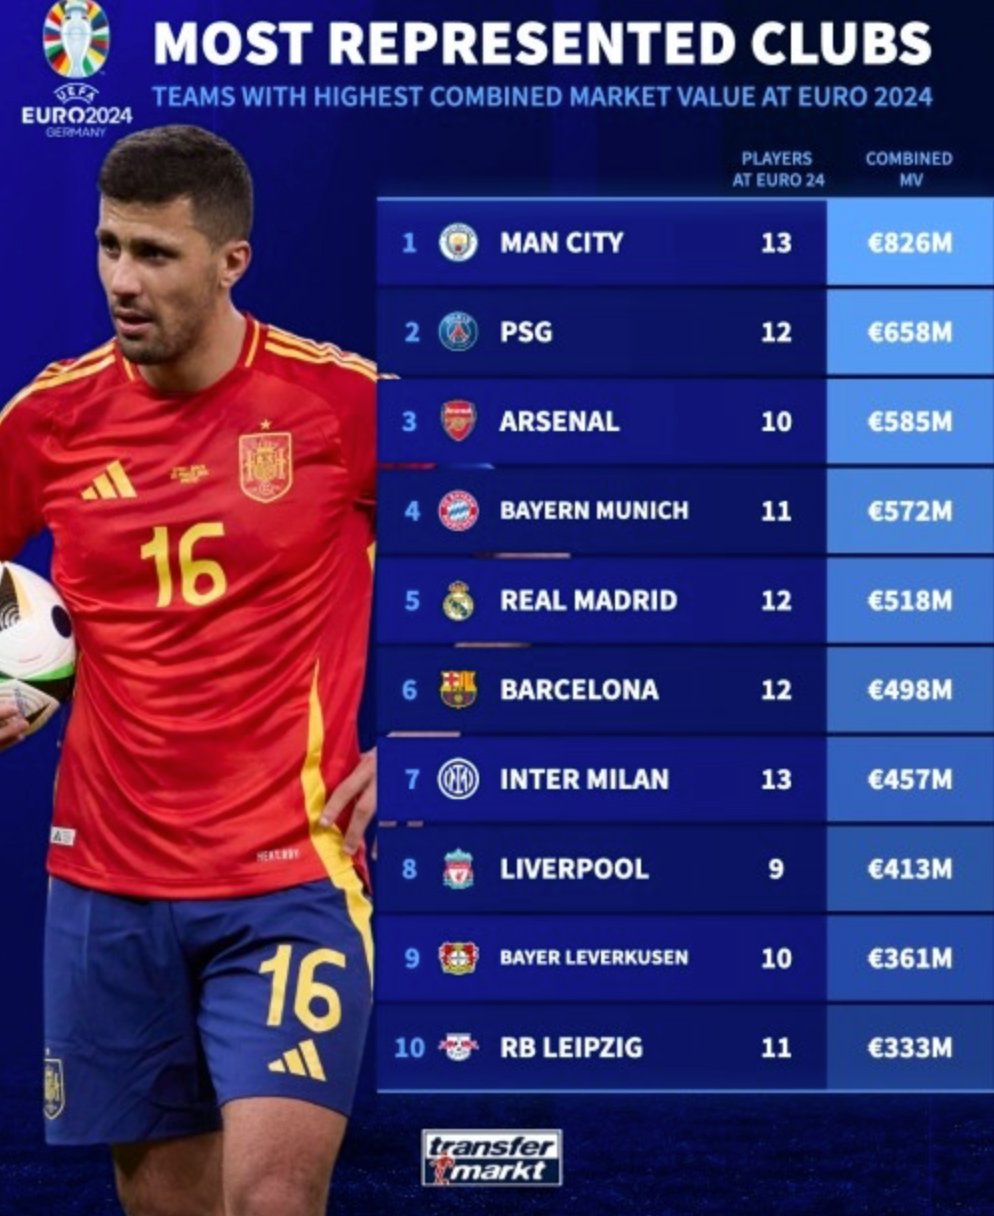 Dezhuan công bố tổng xếp hạng giá trị cầu thủ các câu lạc bộ tham dự cúp châu Âu: Manchester City dẫn đầu, tiếp theo là Paris và Arsenal.